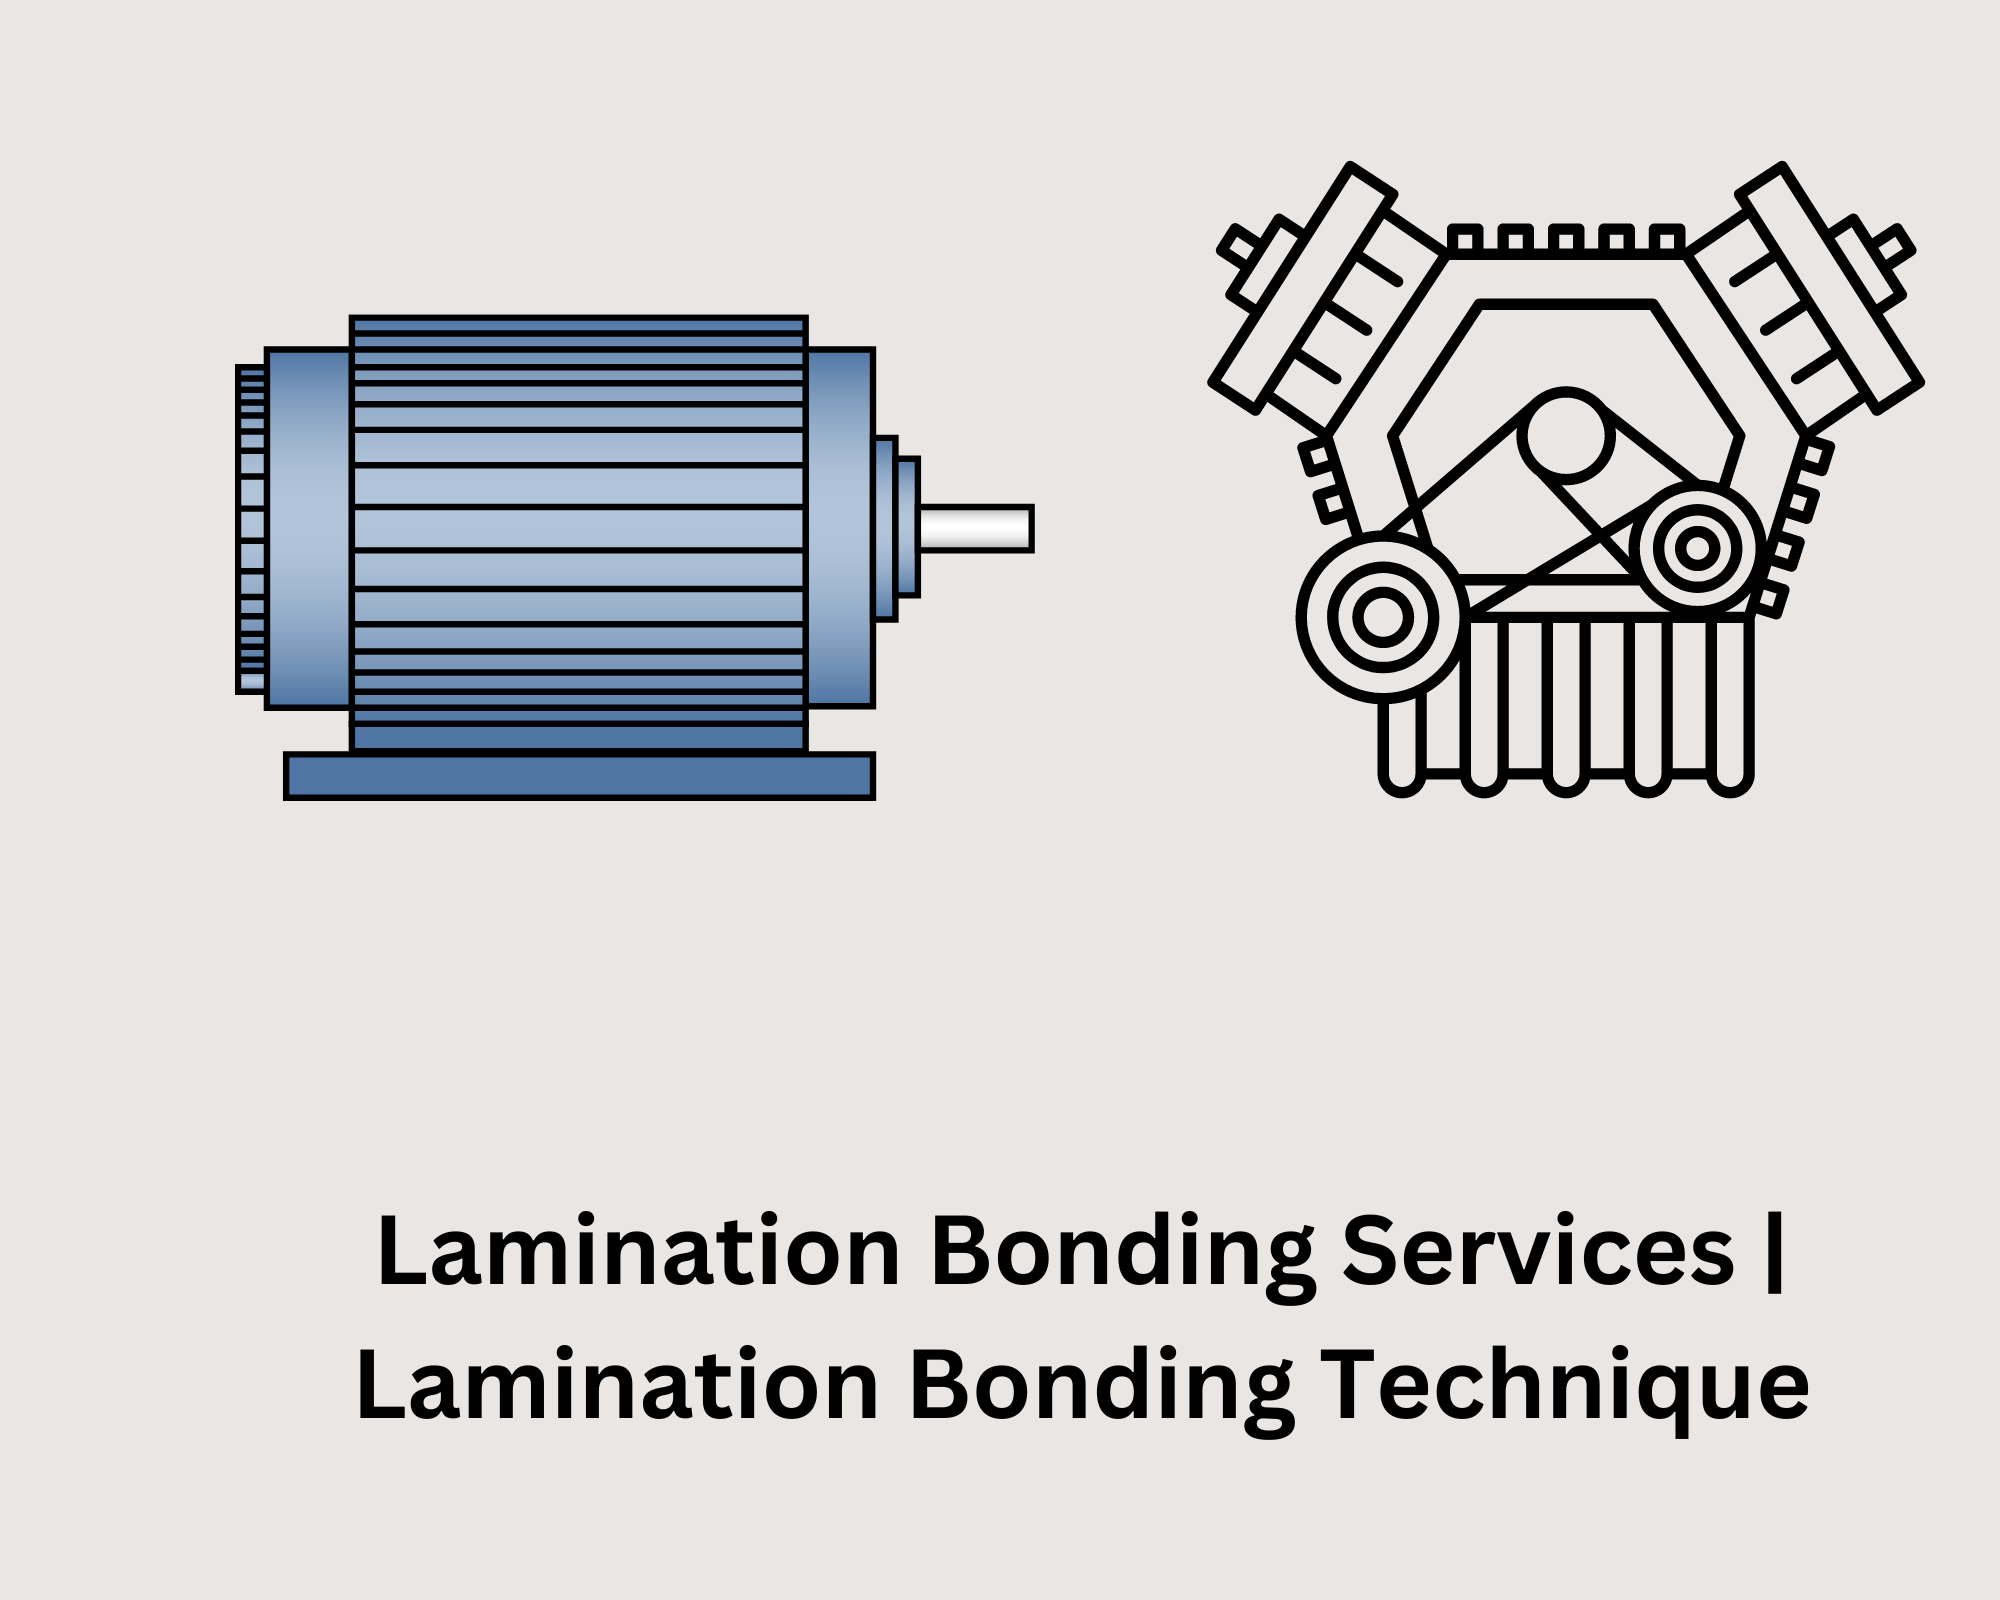  Lamination Bonding Technique  | Lamination Bonding Services